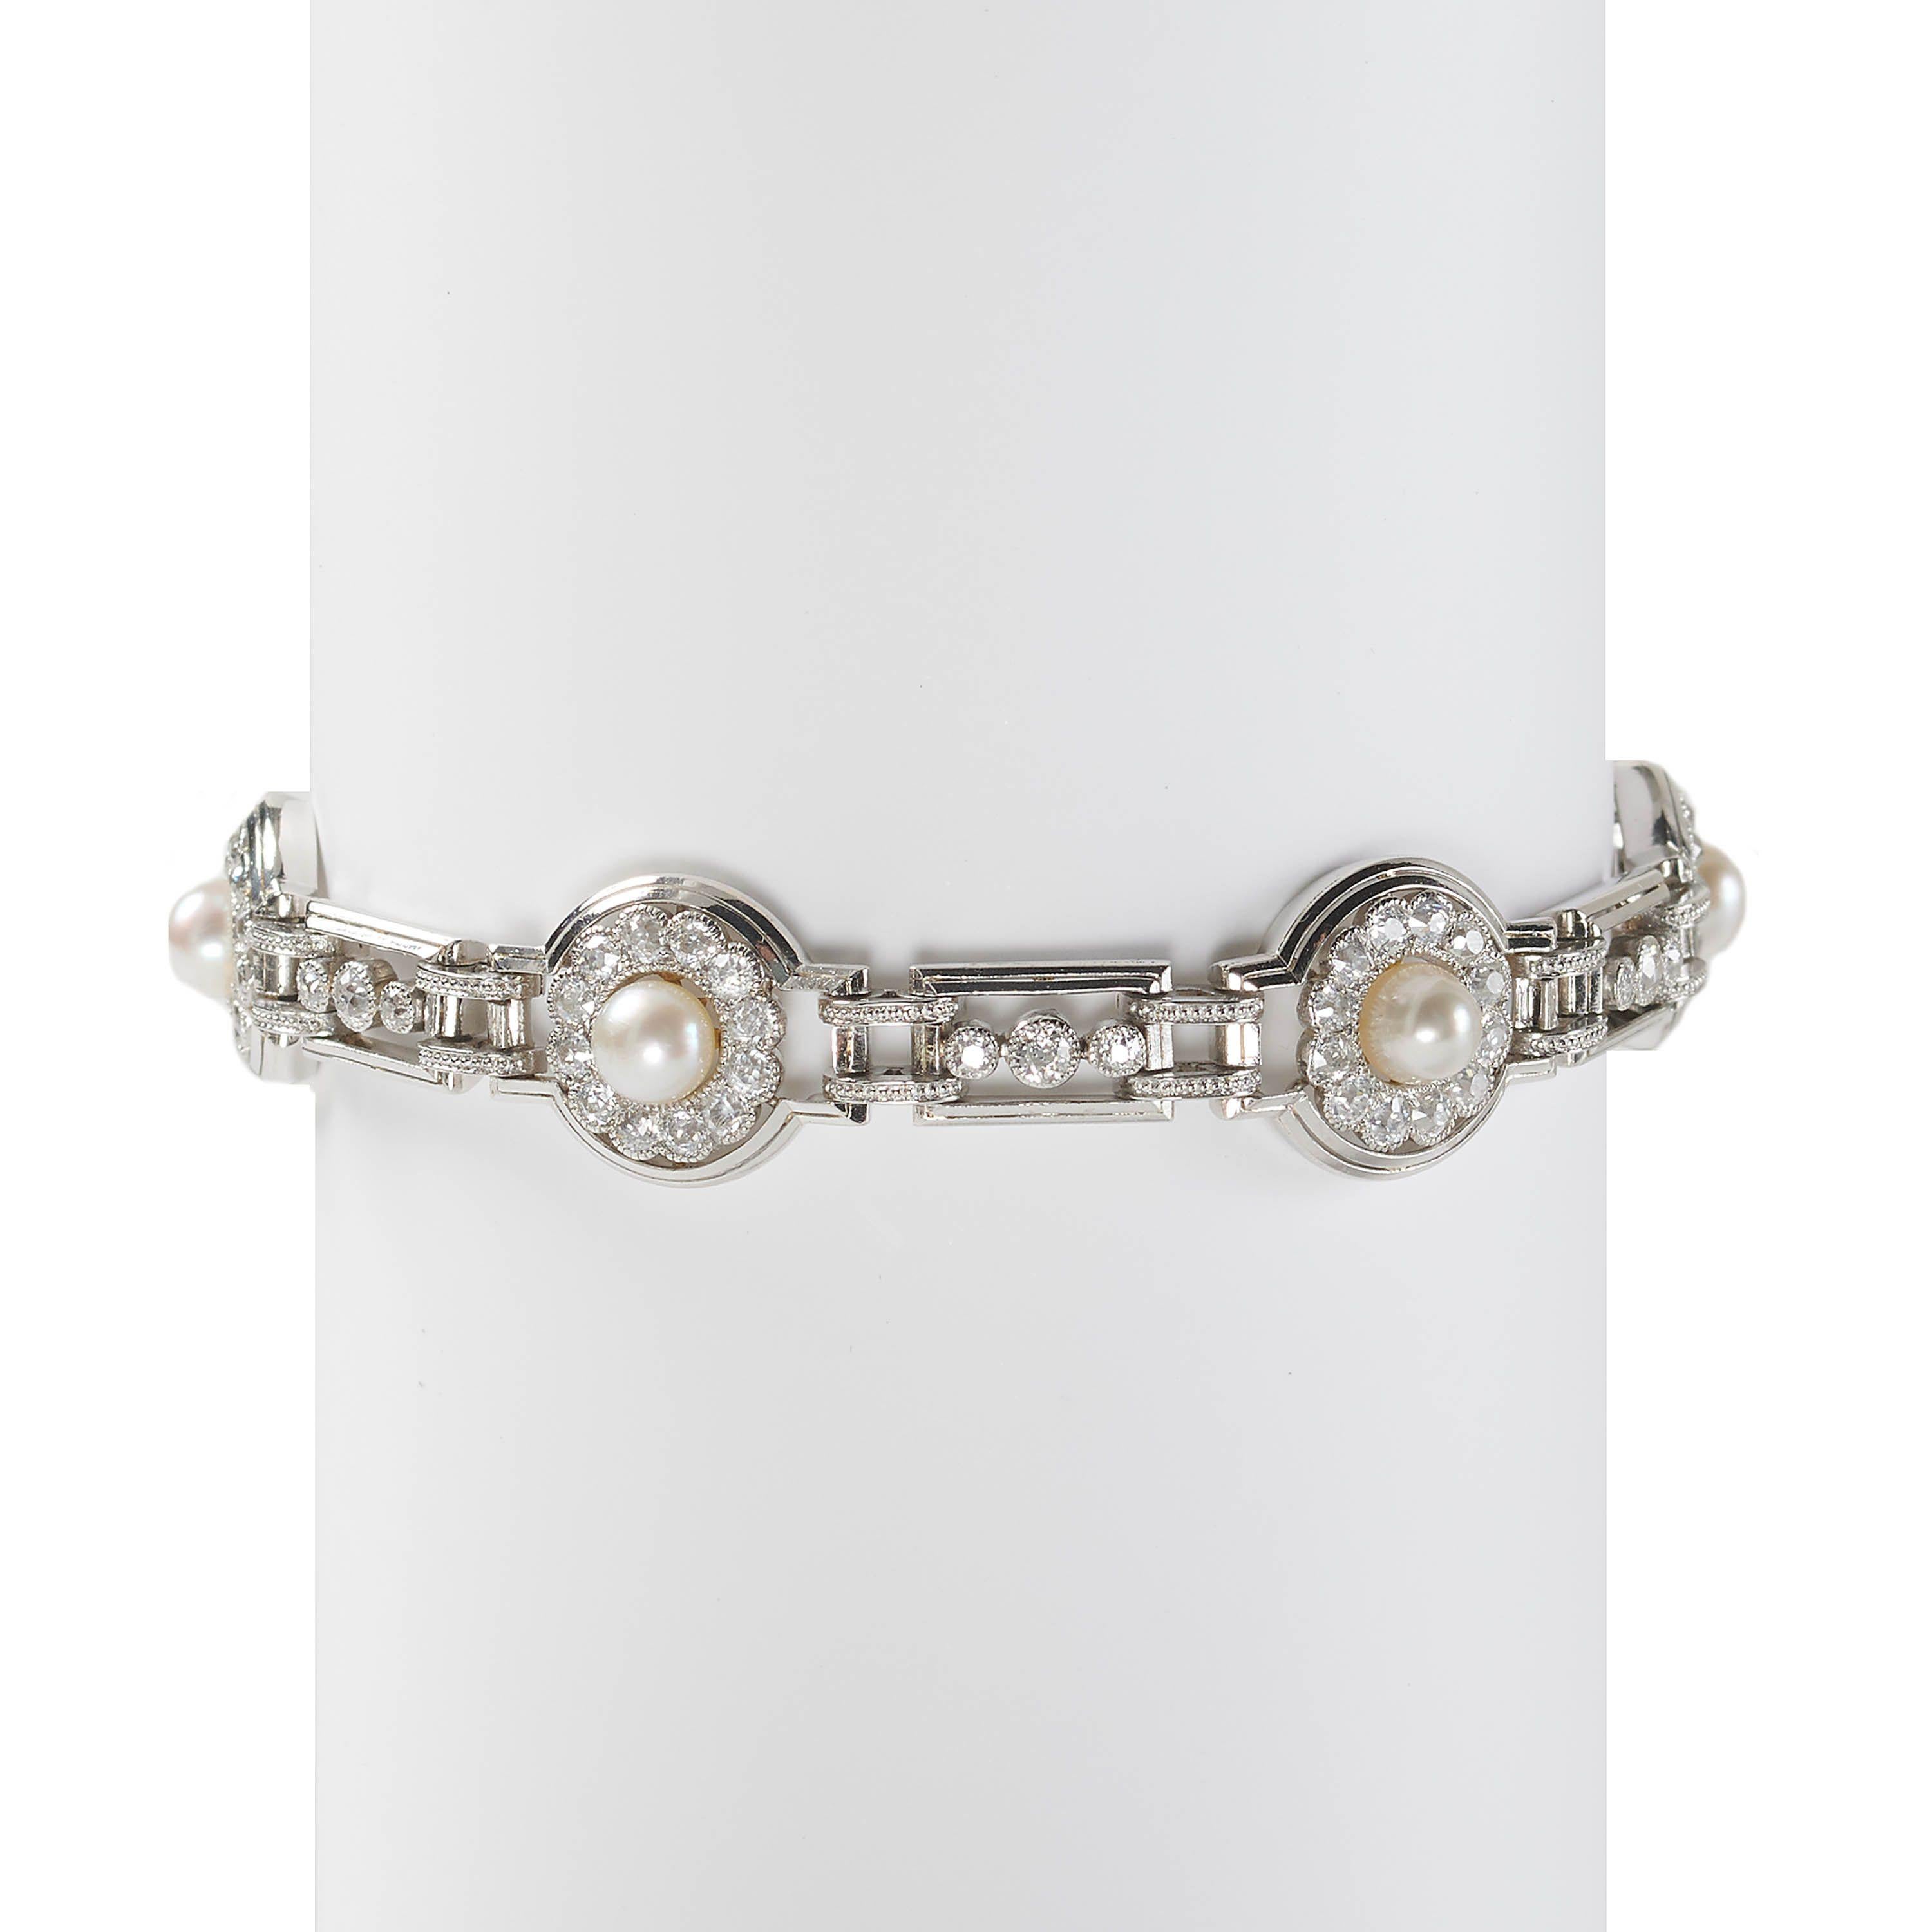 Art Déco-Armband aus Naturperlen, Diamanten und Platin, abwechselnd kreisförmig und rechteckig, mit sechs progressiven, zweireihigen Platinringen, jeweils mit Clustern, besetzt mit natürlichen Bouton-Perlen, in Goldfassungen, in der Mitte von zwölf